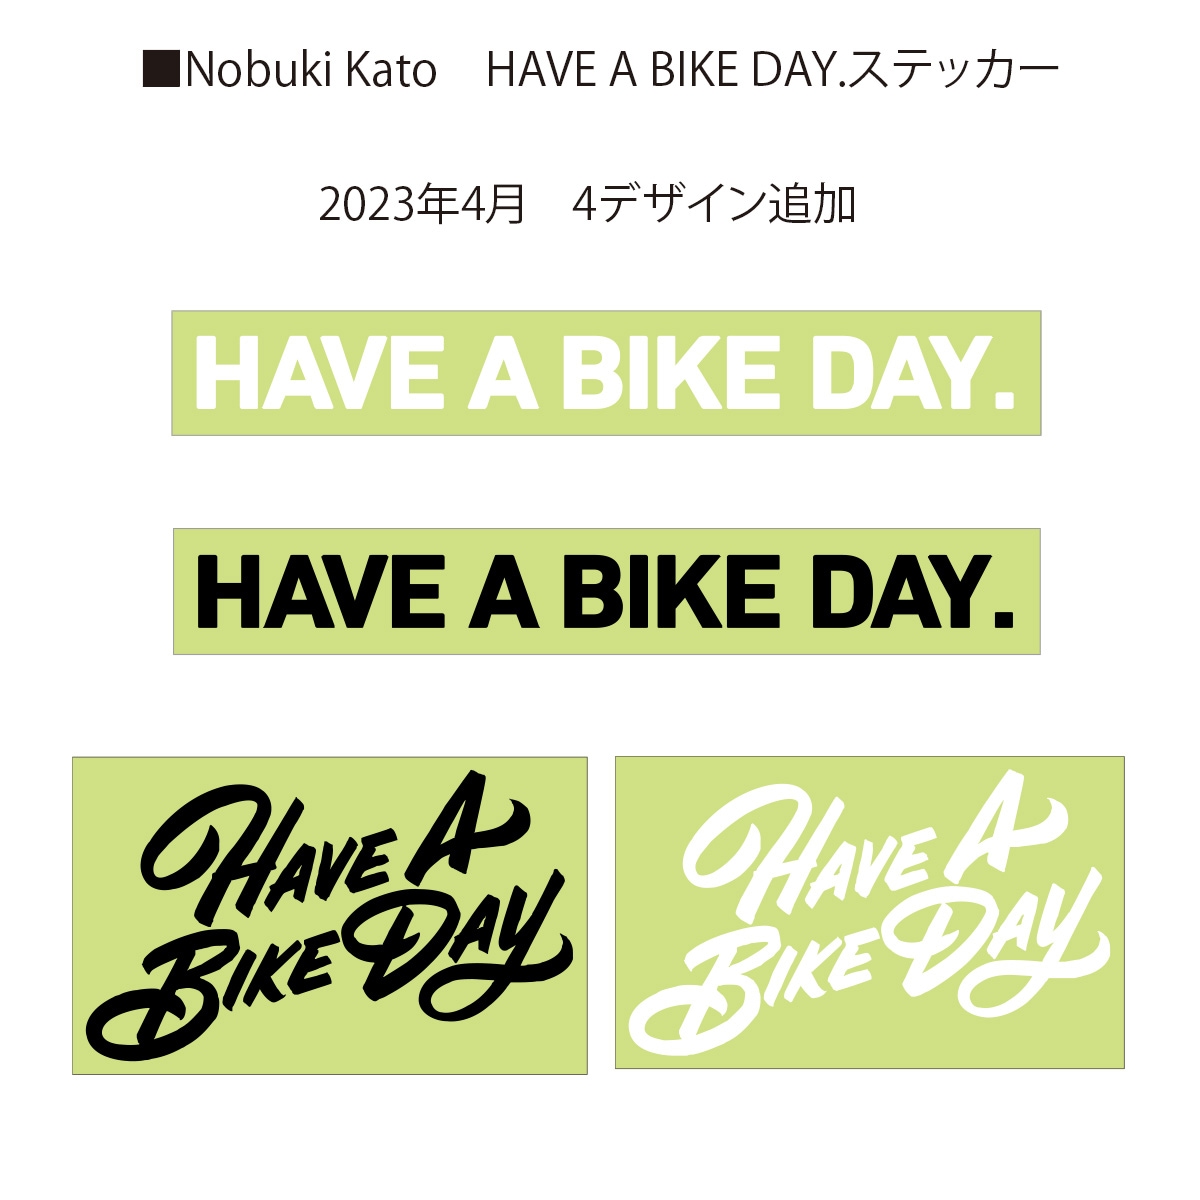 アライヘルメット RAPIDE-NEO OVERLANDのグラフィックデザインを手がけた加藤ノブキ氏とのライセンス契約で実現したステッカーシリーズ「バイクのある日常」をテーマにした「HAVE A BIKE DAY.」に新商品4デザインが追加されました。